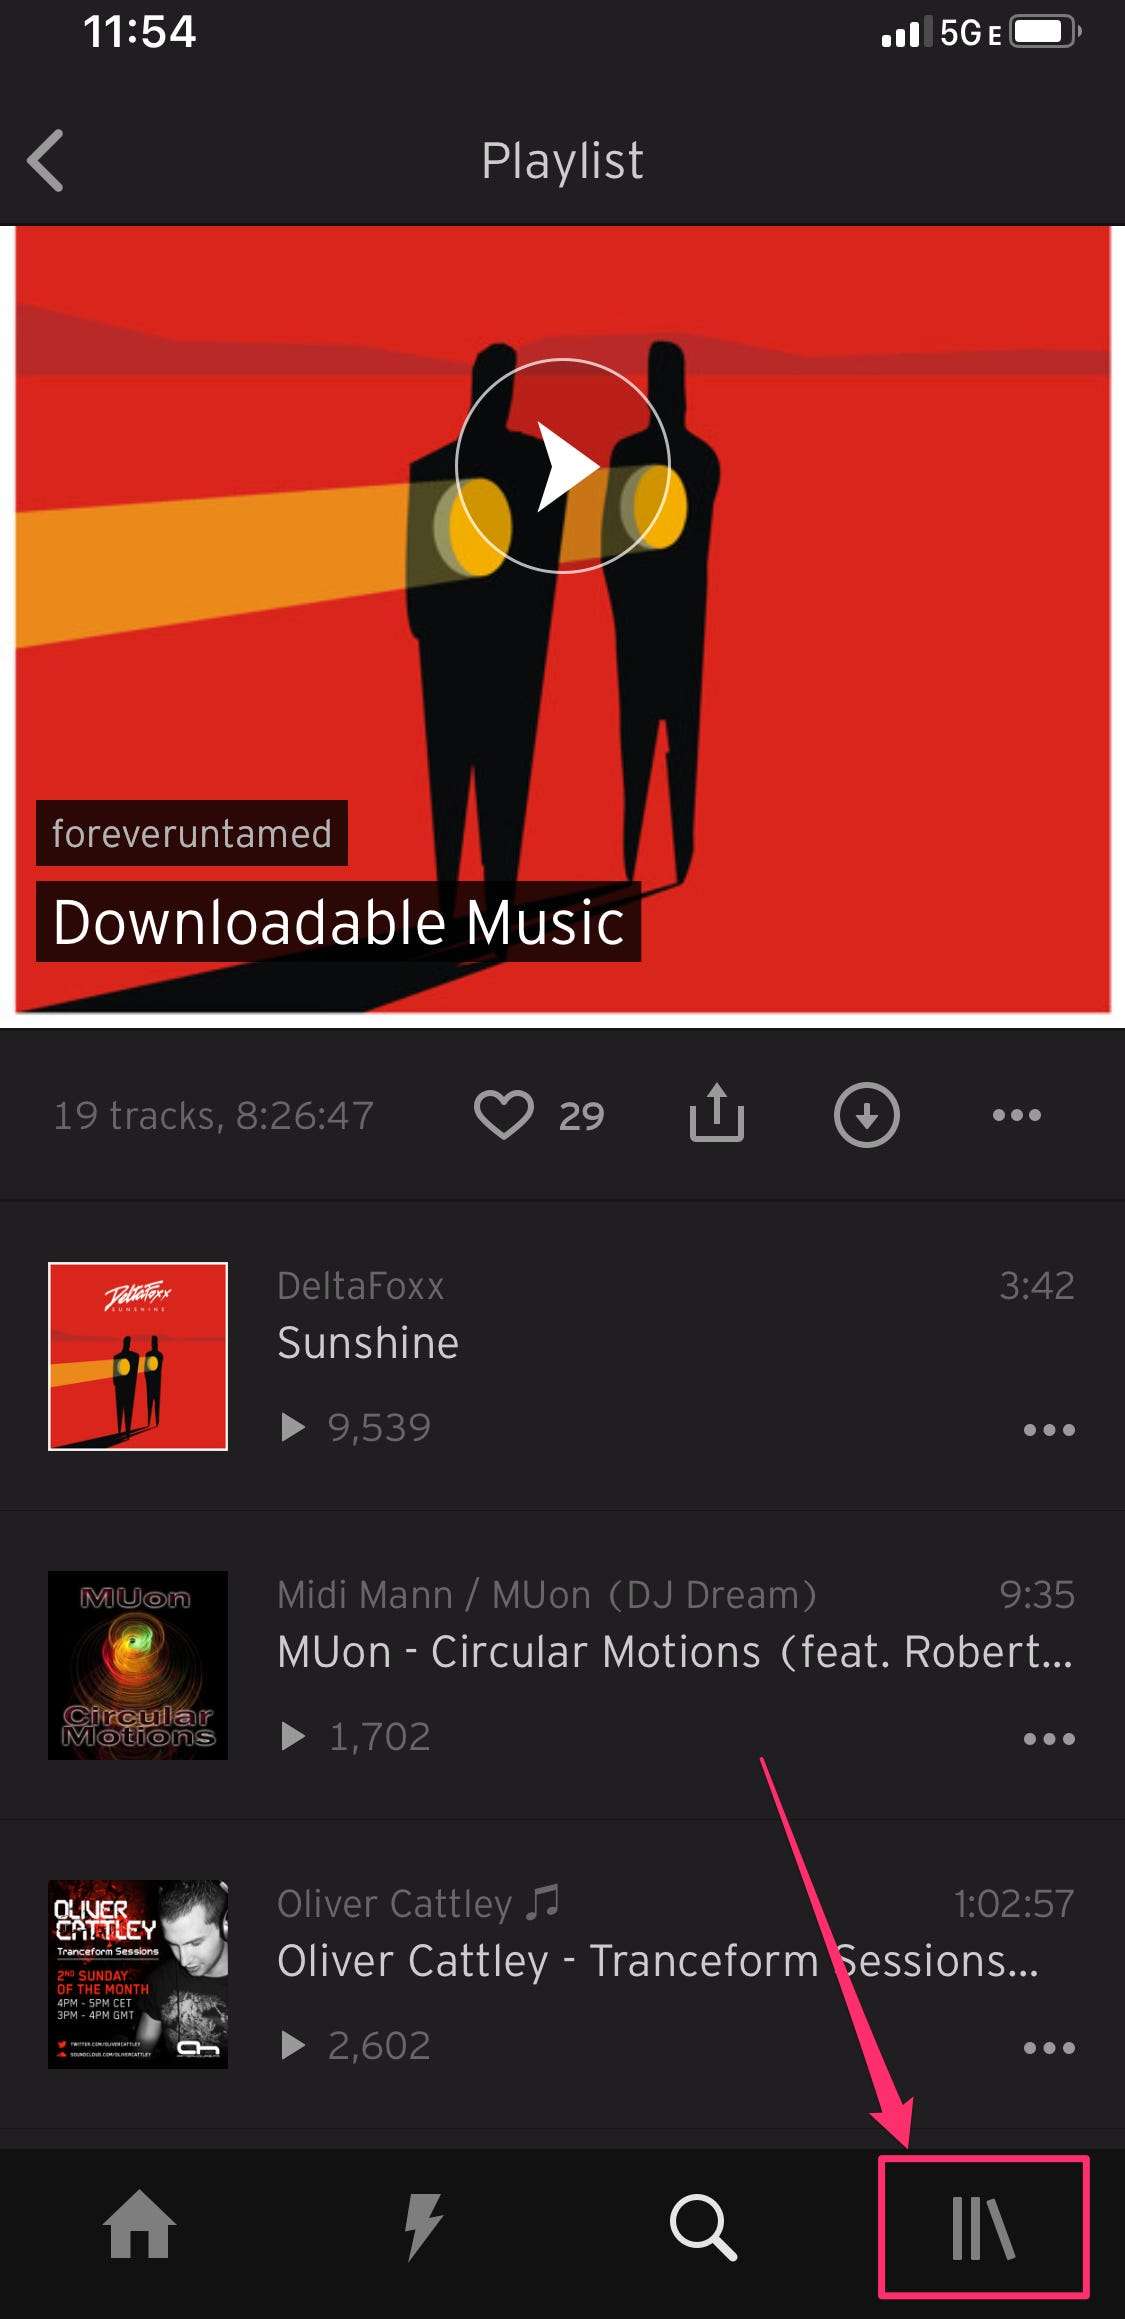 soundcloud downloader app for pc